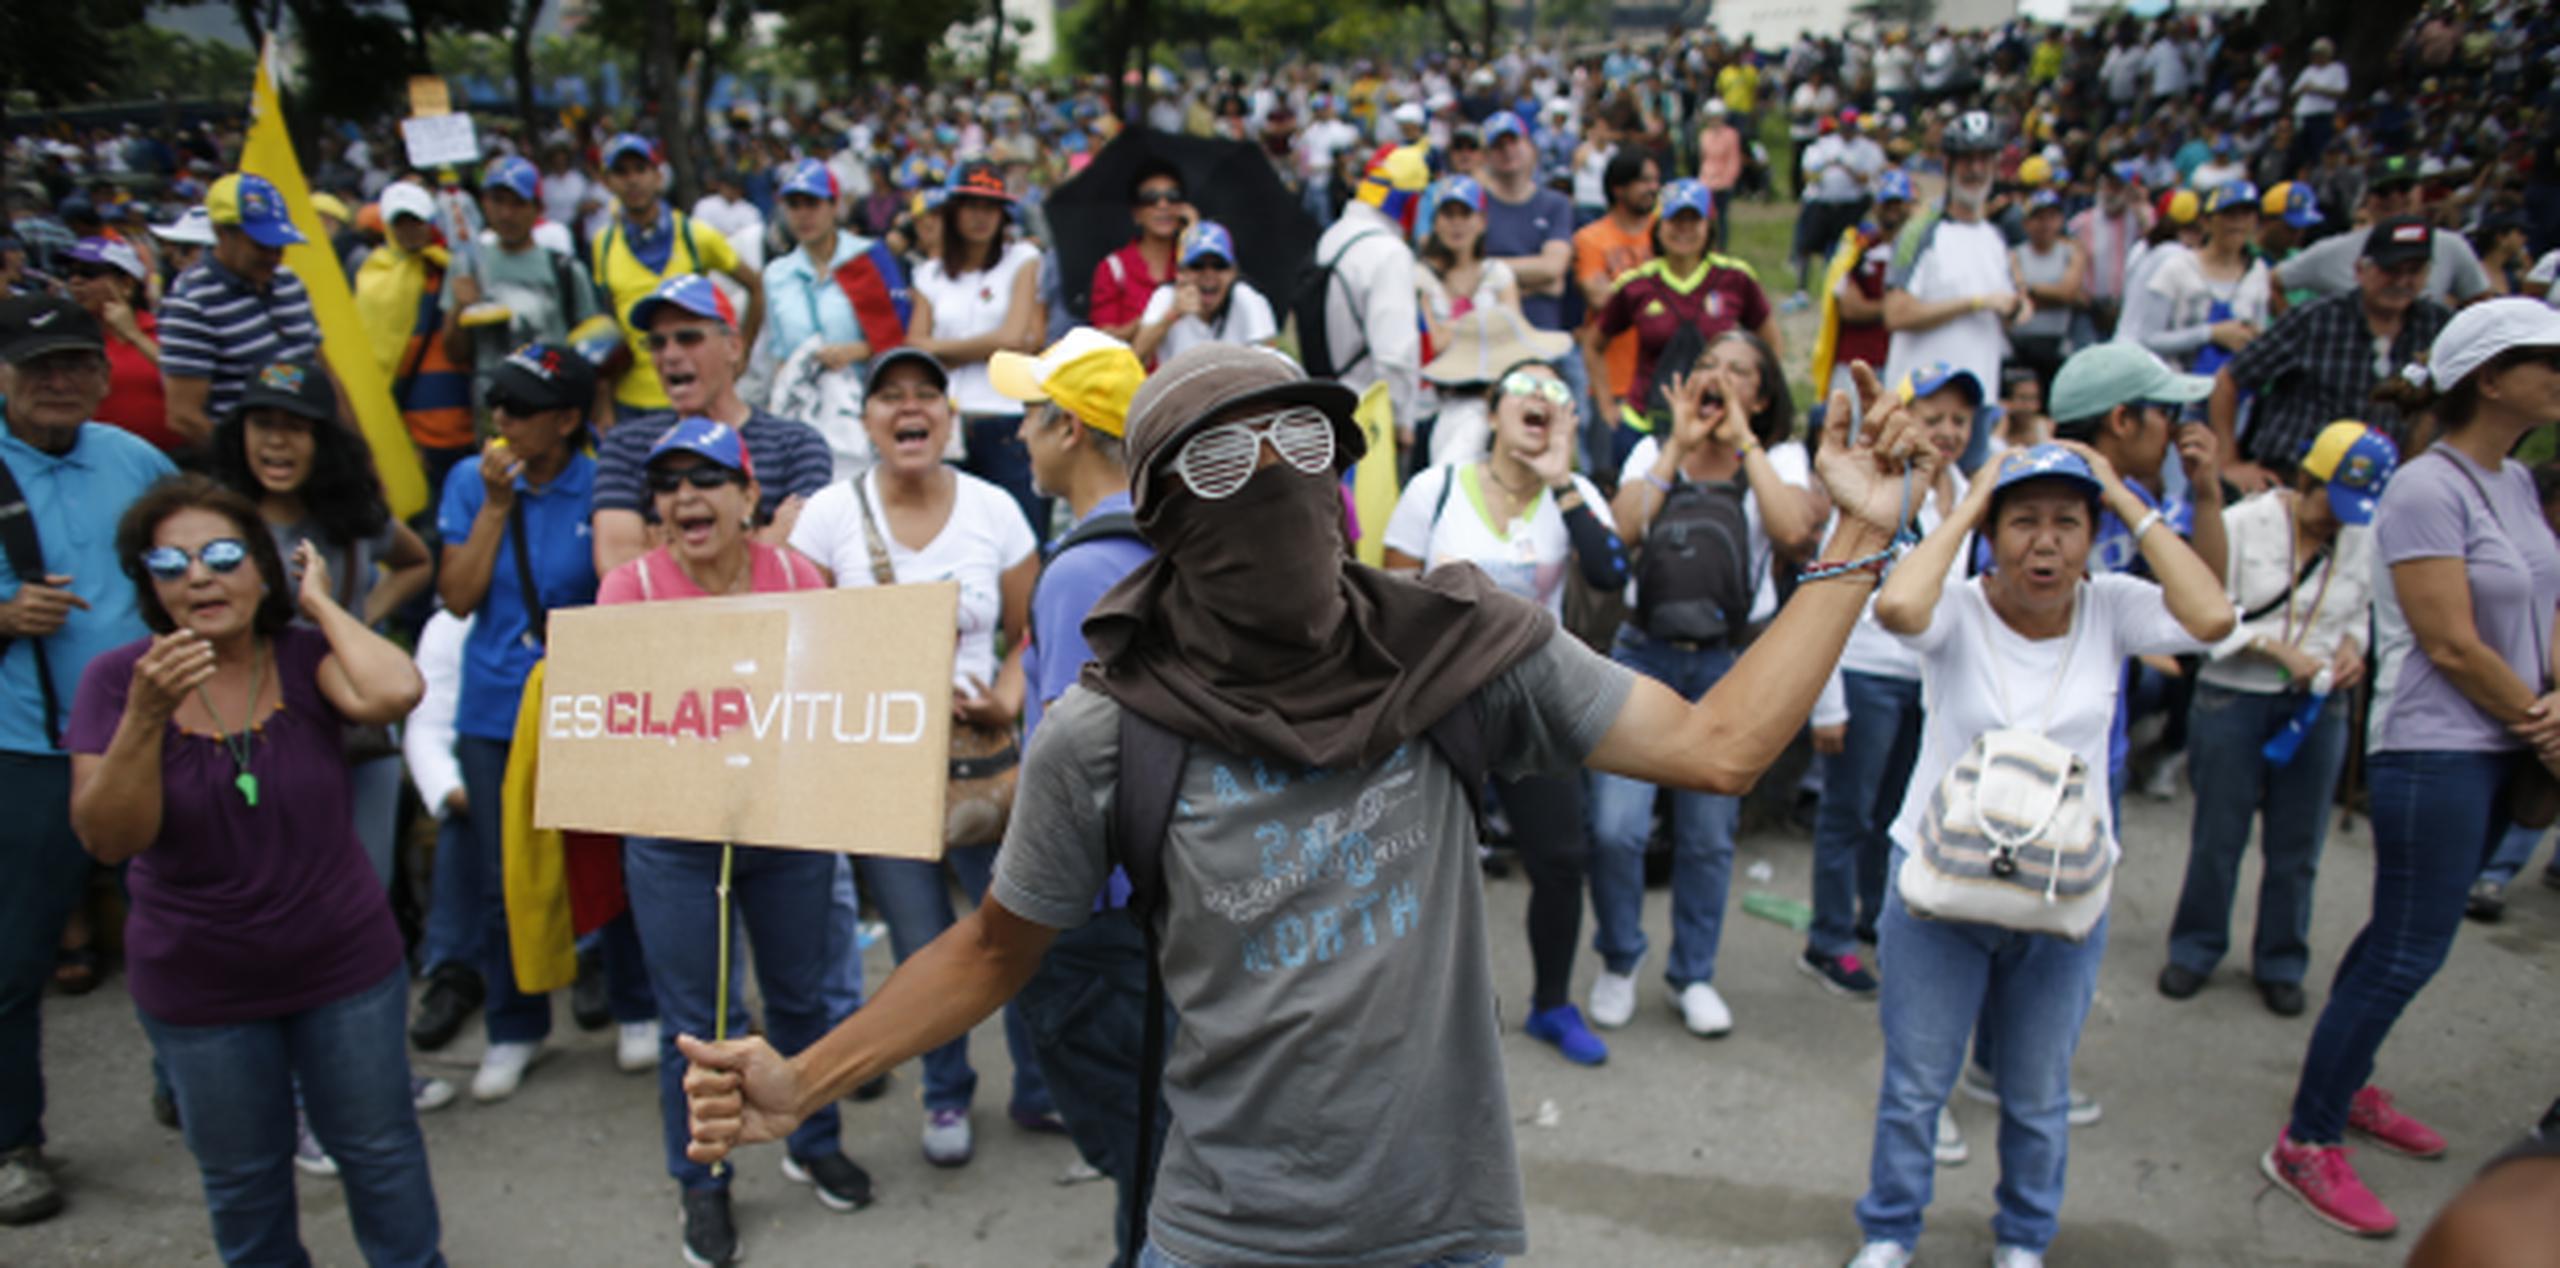 Miles de personas se lanzaron el sábado nuevamente a las calles a protestar contra el gobierno de Nicolás Maduro. (AP/Ariana Cubillos)
